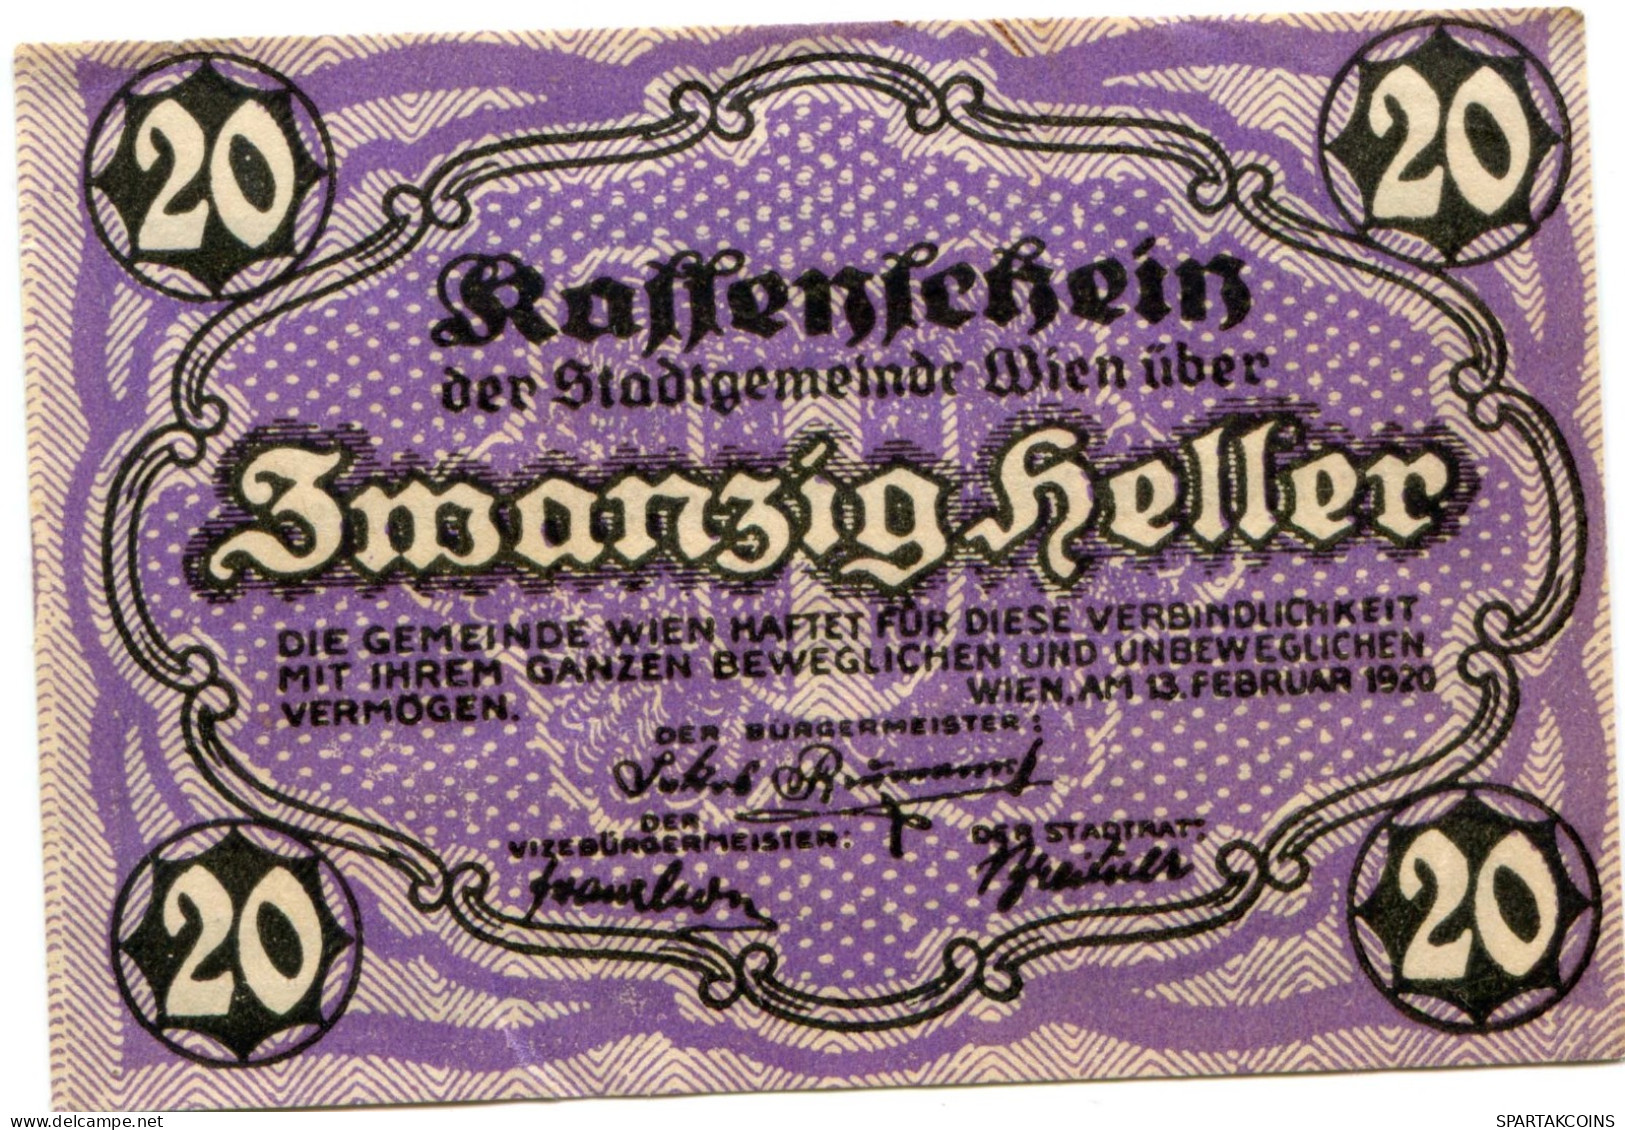 20 HELLER 1920 Stadt Wien Österreich Notgeld Papiergeld Banknote #PL554 - [11] Local Banknote Issues